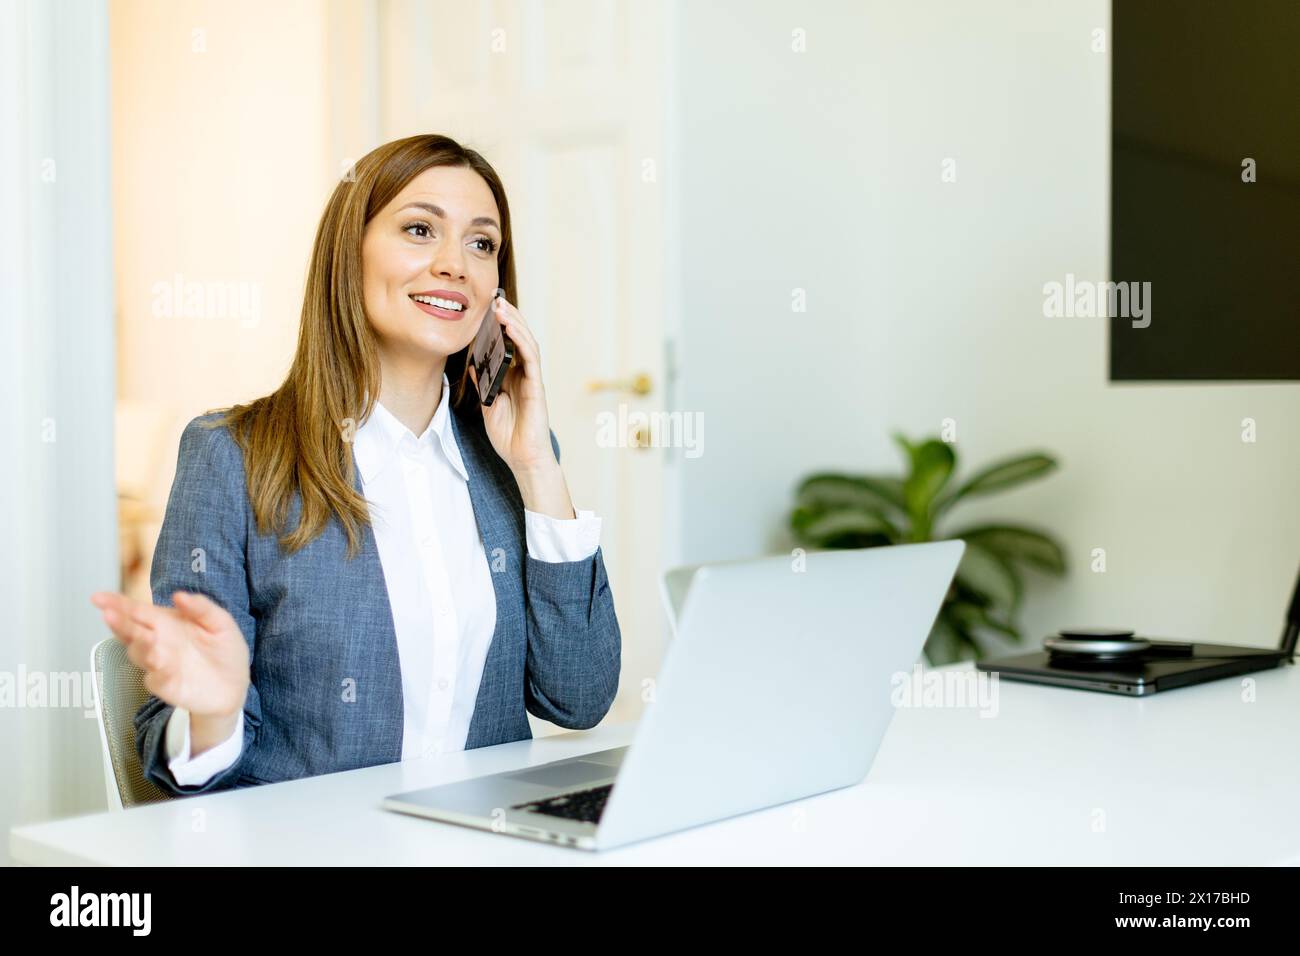 Geschäftsfrau spricht über Dinge auf ihrem Smartphone und bewegt sich in ihrem modernen Bürobereich anschaulich. Stockfoto